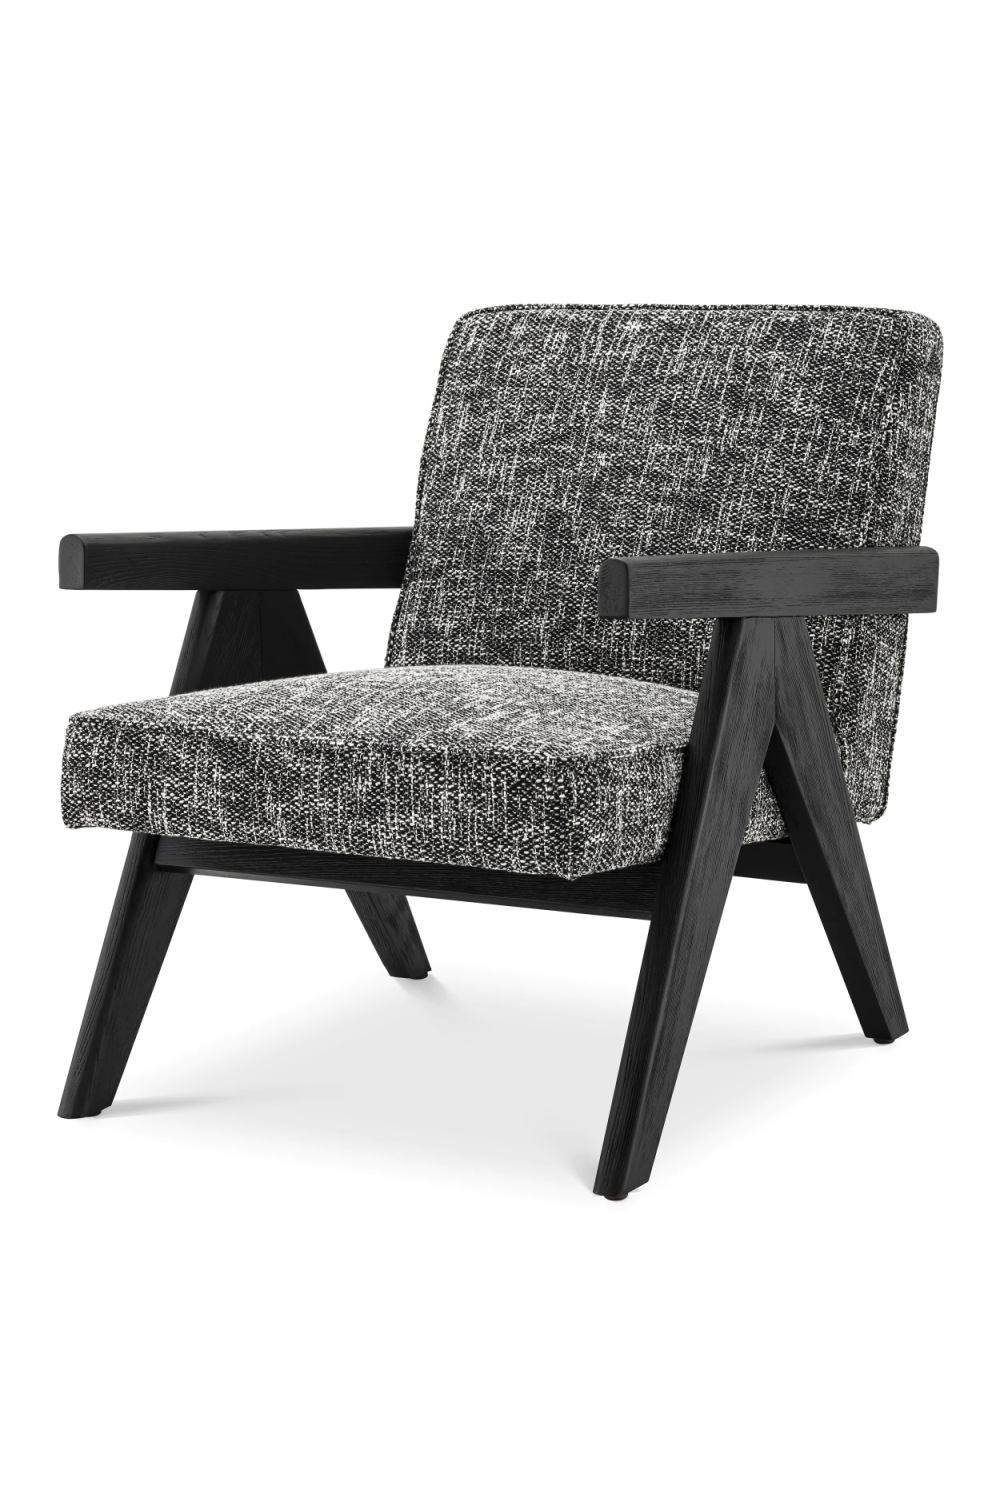 Black Vintage Minimalist Lounge Chair | Eichholtz Greta | Oroa.com